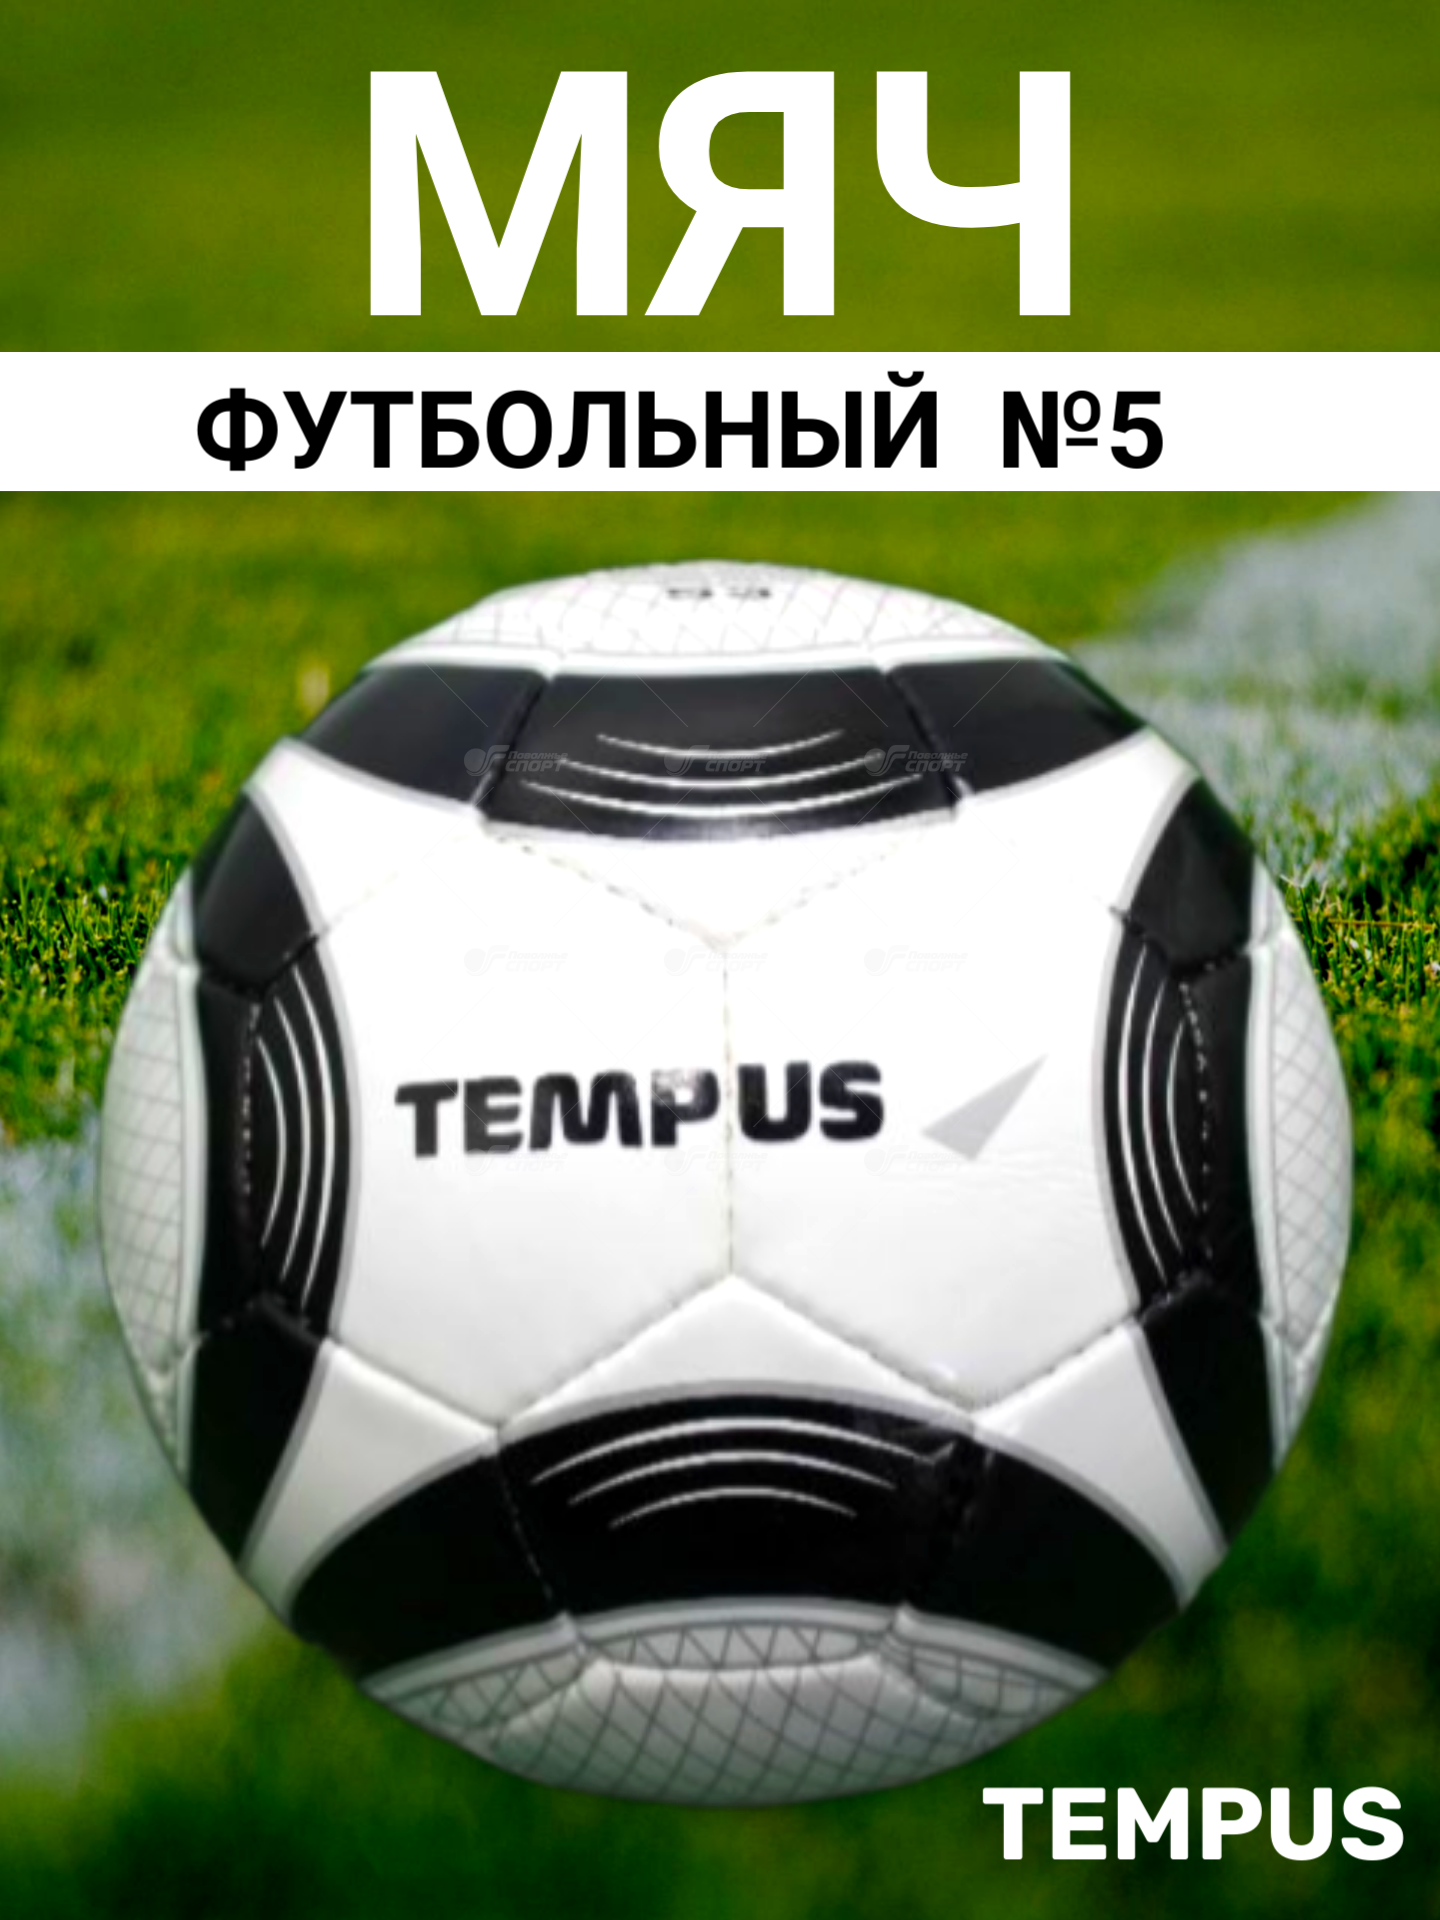 Мяч ф/б Tempus Energy арт.E53